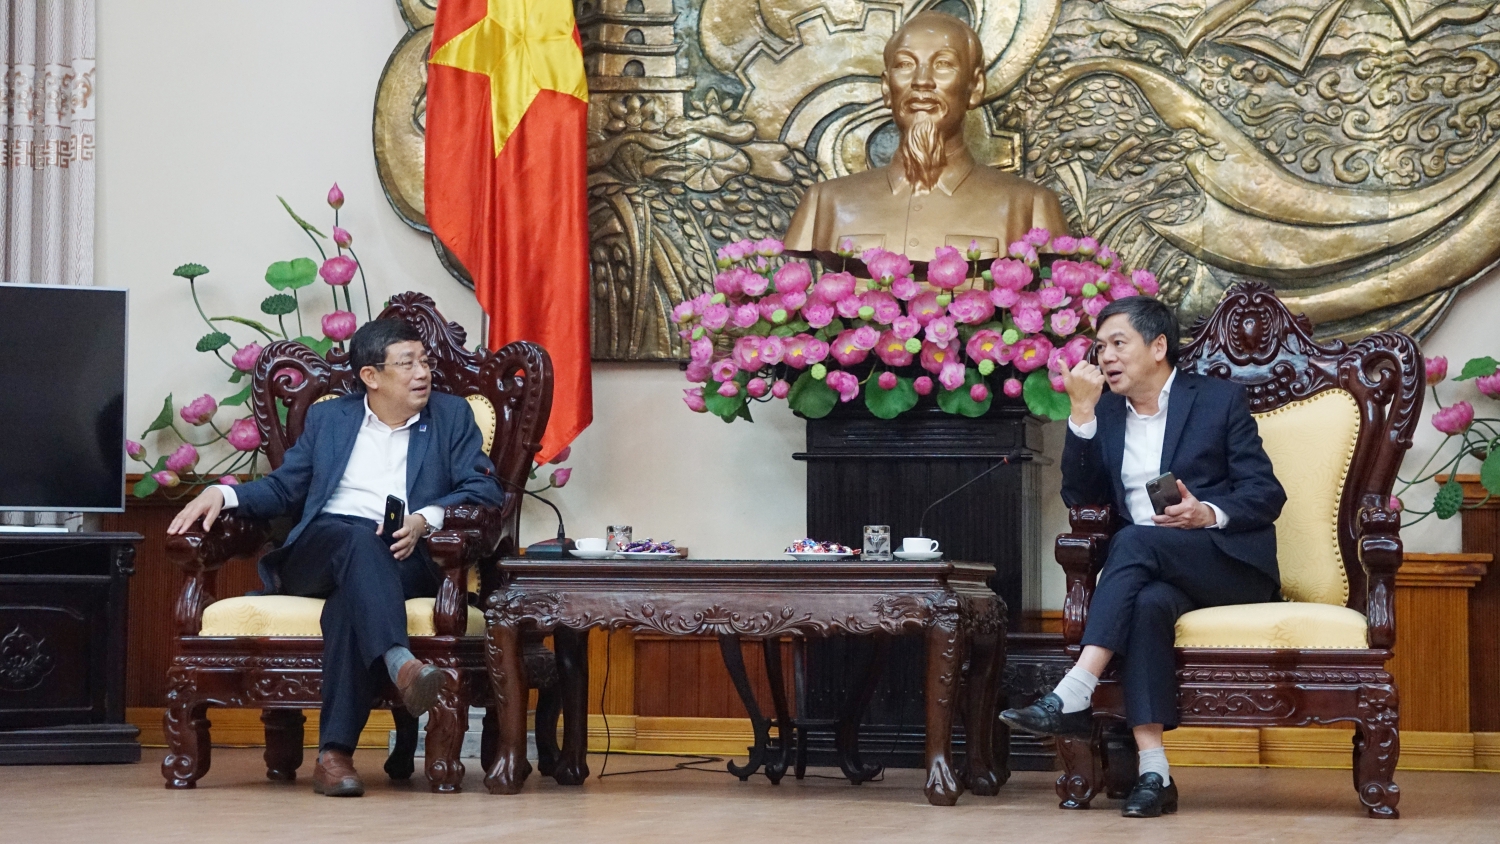 Petrovietnam đồng hành, ủng hộ 600 triệu đồng cho chương trình Tết vì người nghèo của tỉnh Nam Định